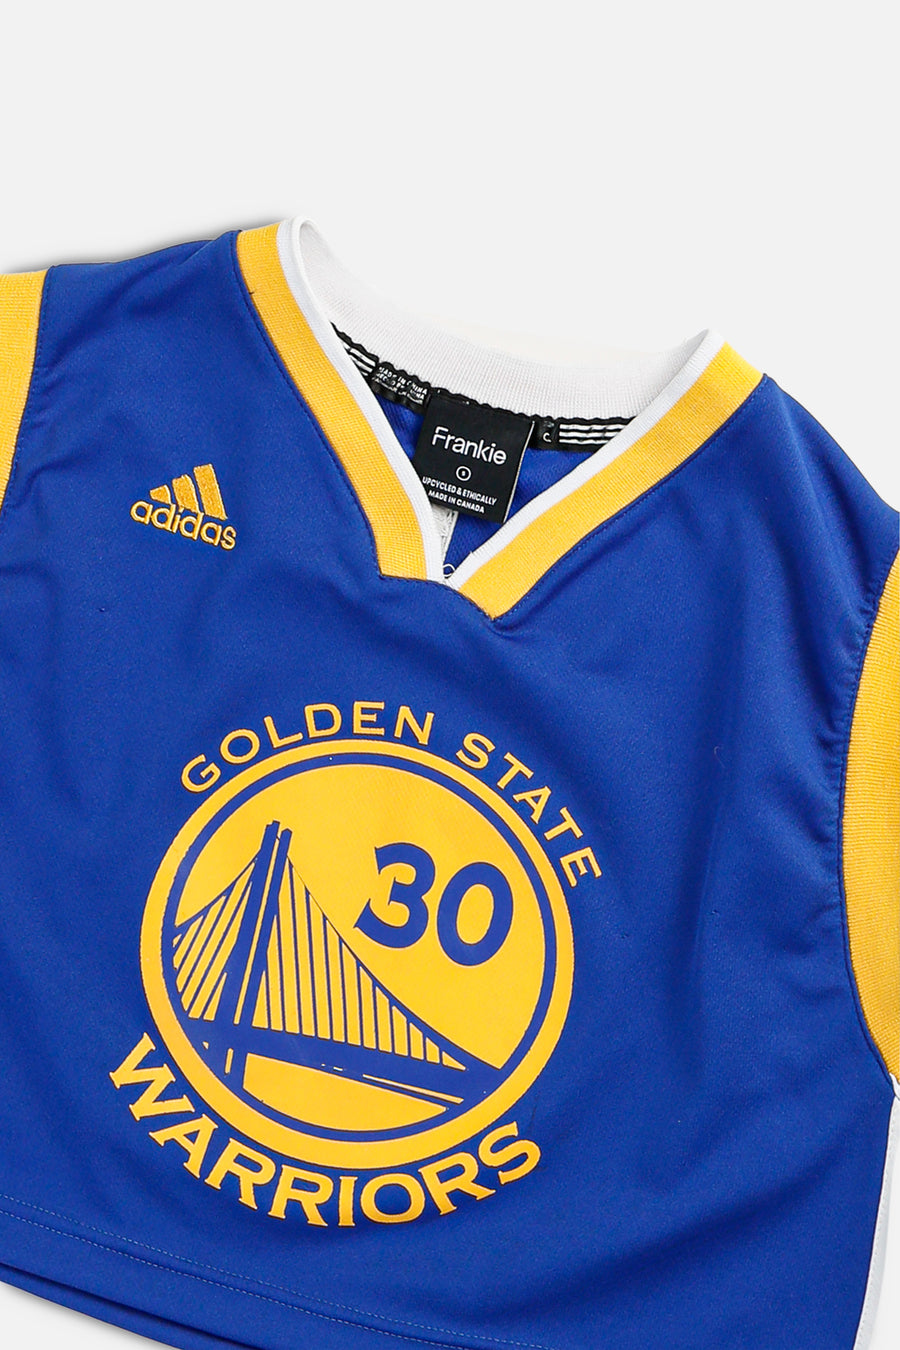 Rework Golden State Warriors NBA Crop Jersey - XS, S, M